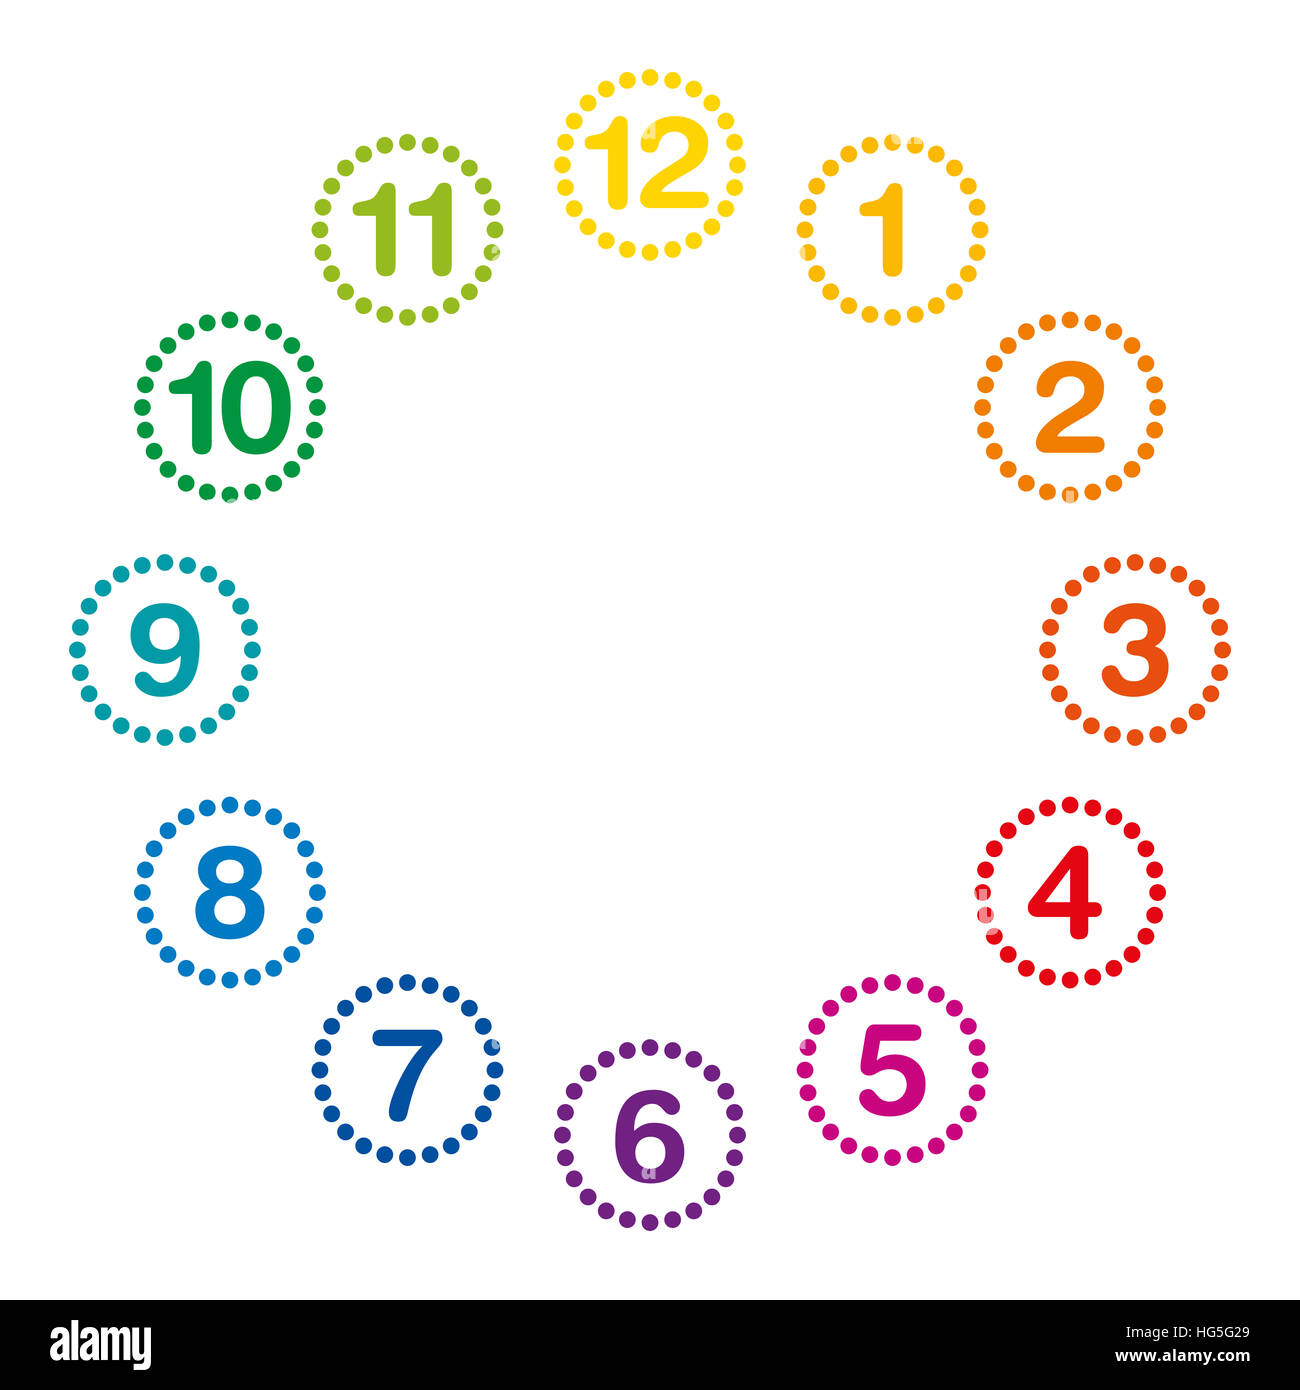 De couleur arc-en-ciel d'horloge avec chiffres arabes et une à douze heures. Cadran de montre et horloge analogique avec des cercles faits de points. Banque D'Images